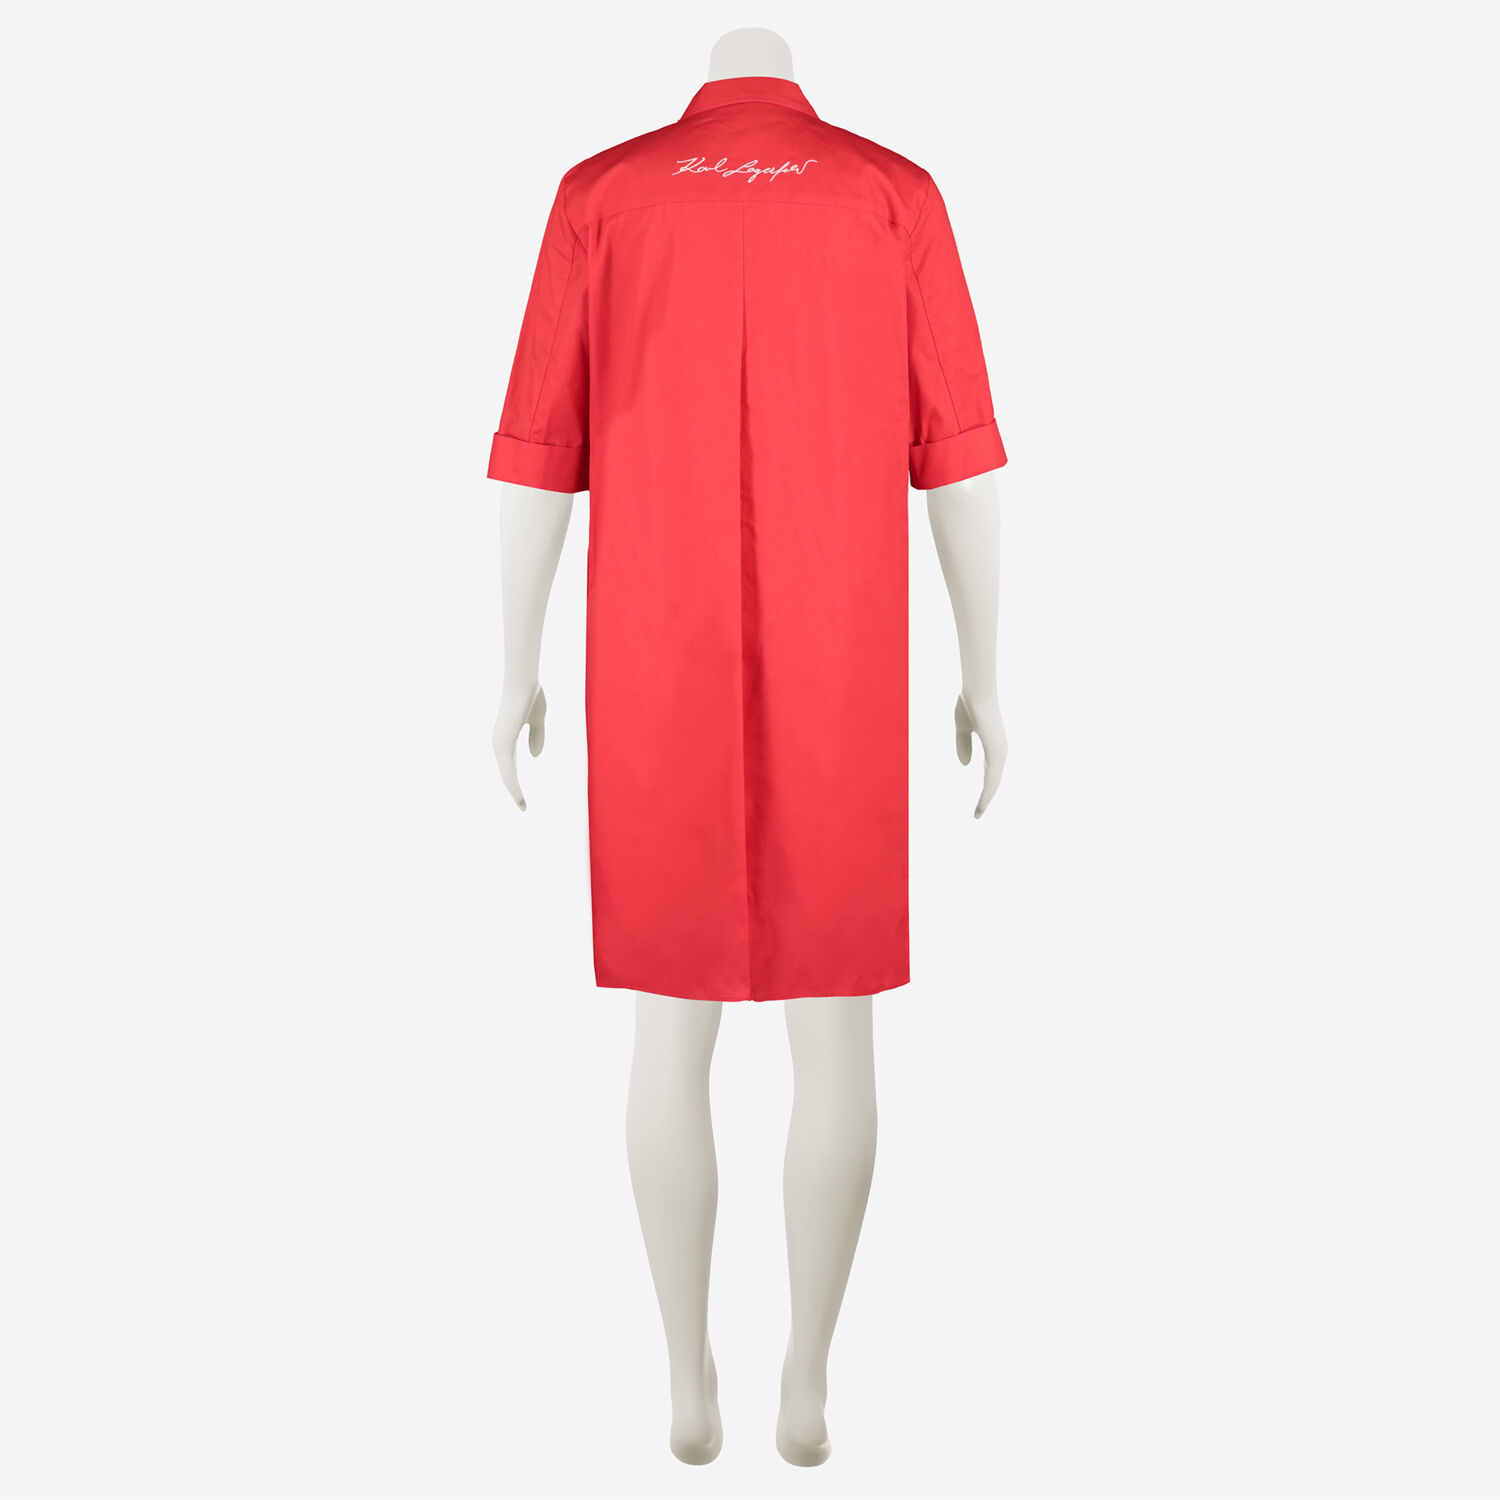 Red Shirt Dress - TK Maxx UK